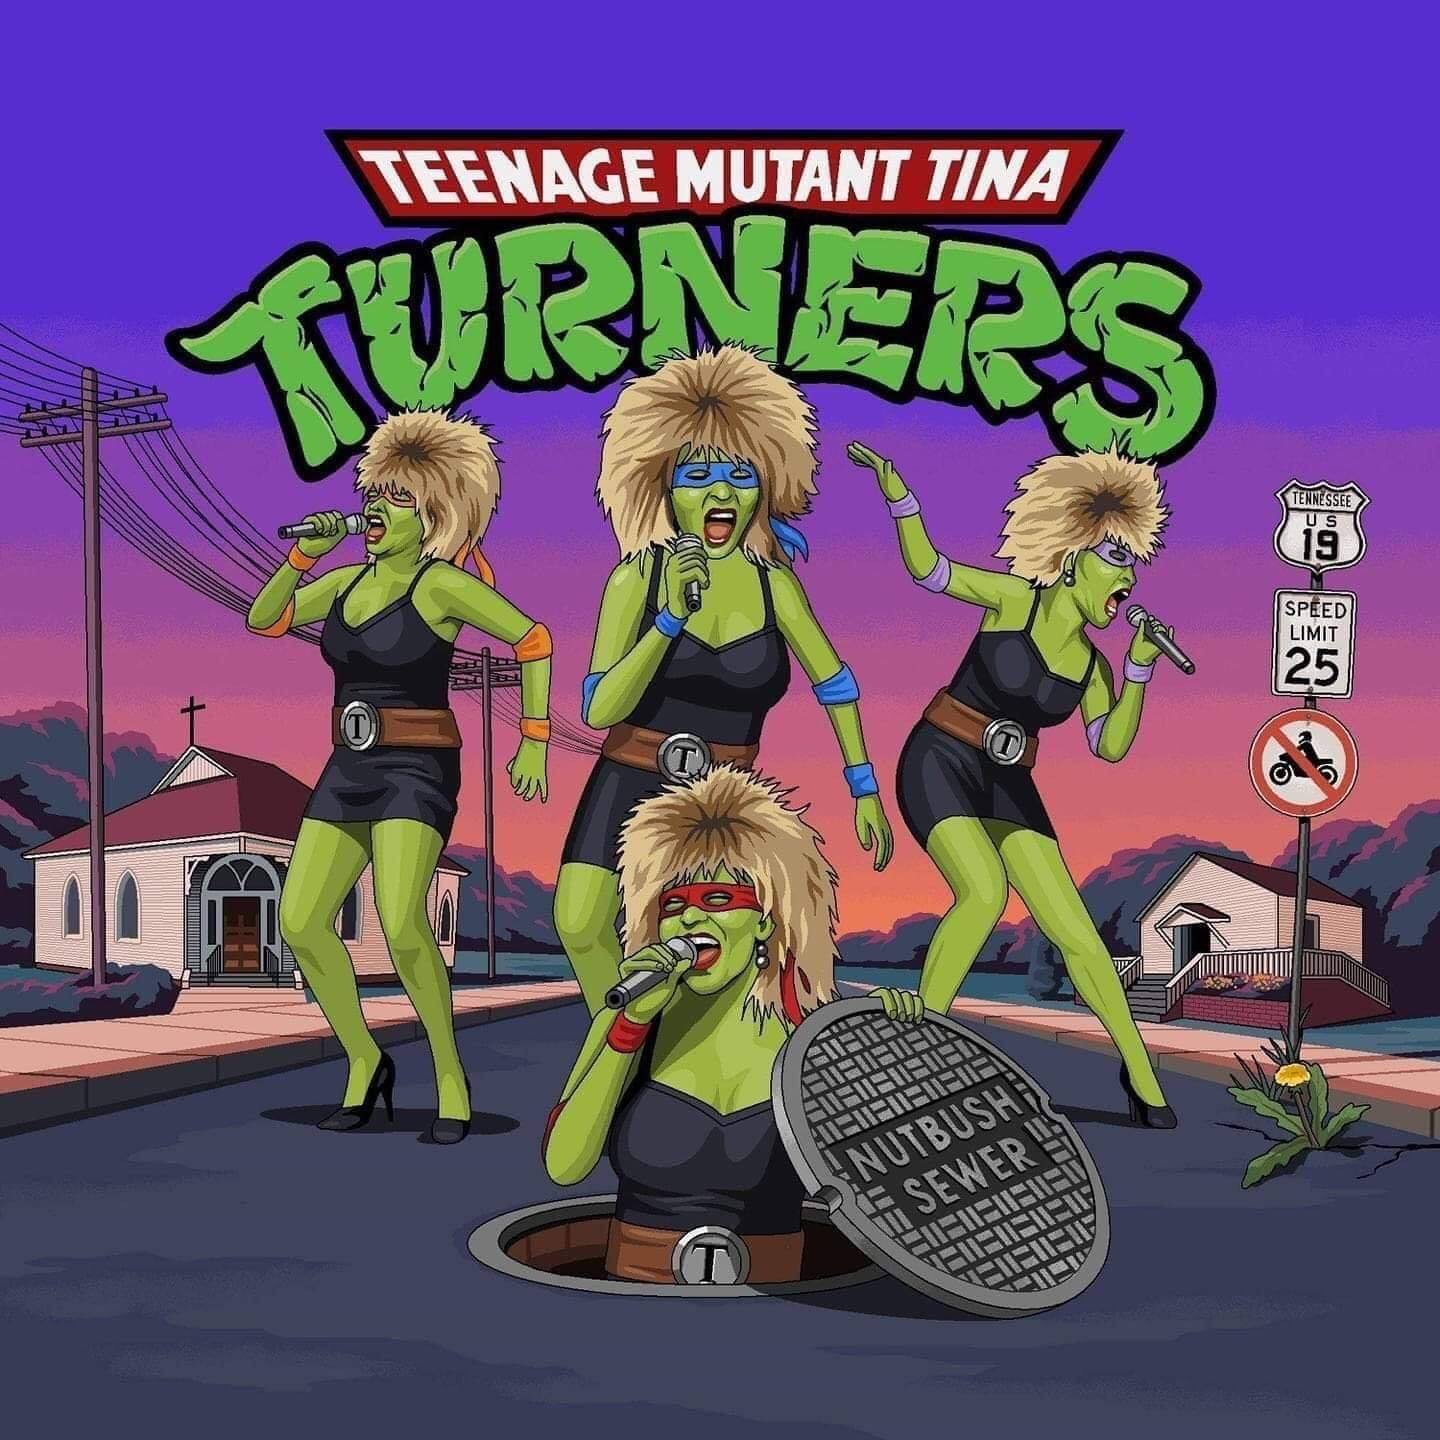 teenage mutant tina turners - Teenage Mutant Tina Curner Tennessee Speed Limit Nutbusha G Sewers Bueueueueu Fisibet Venfeit